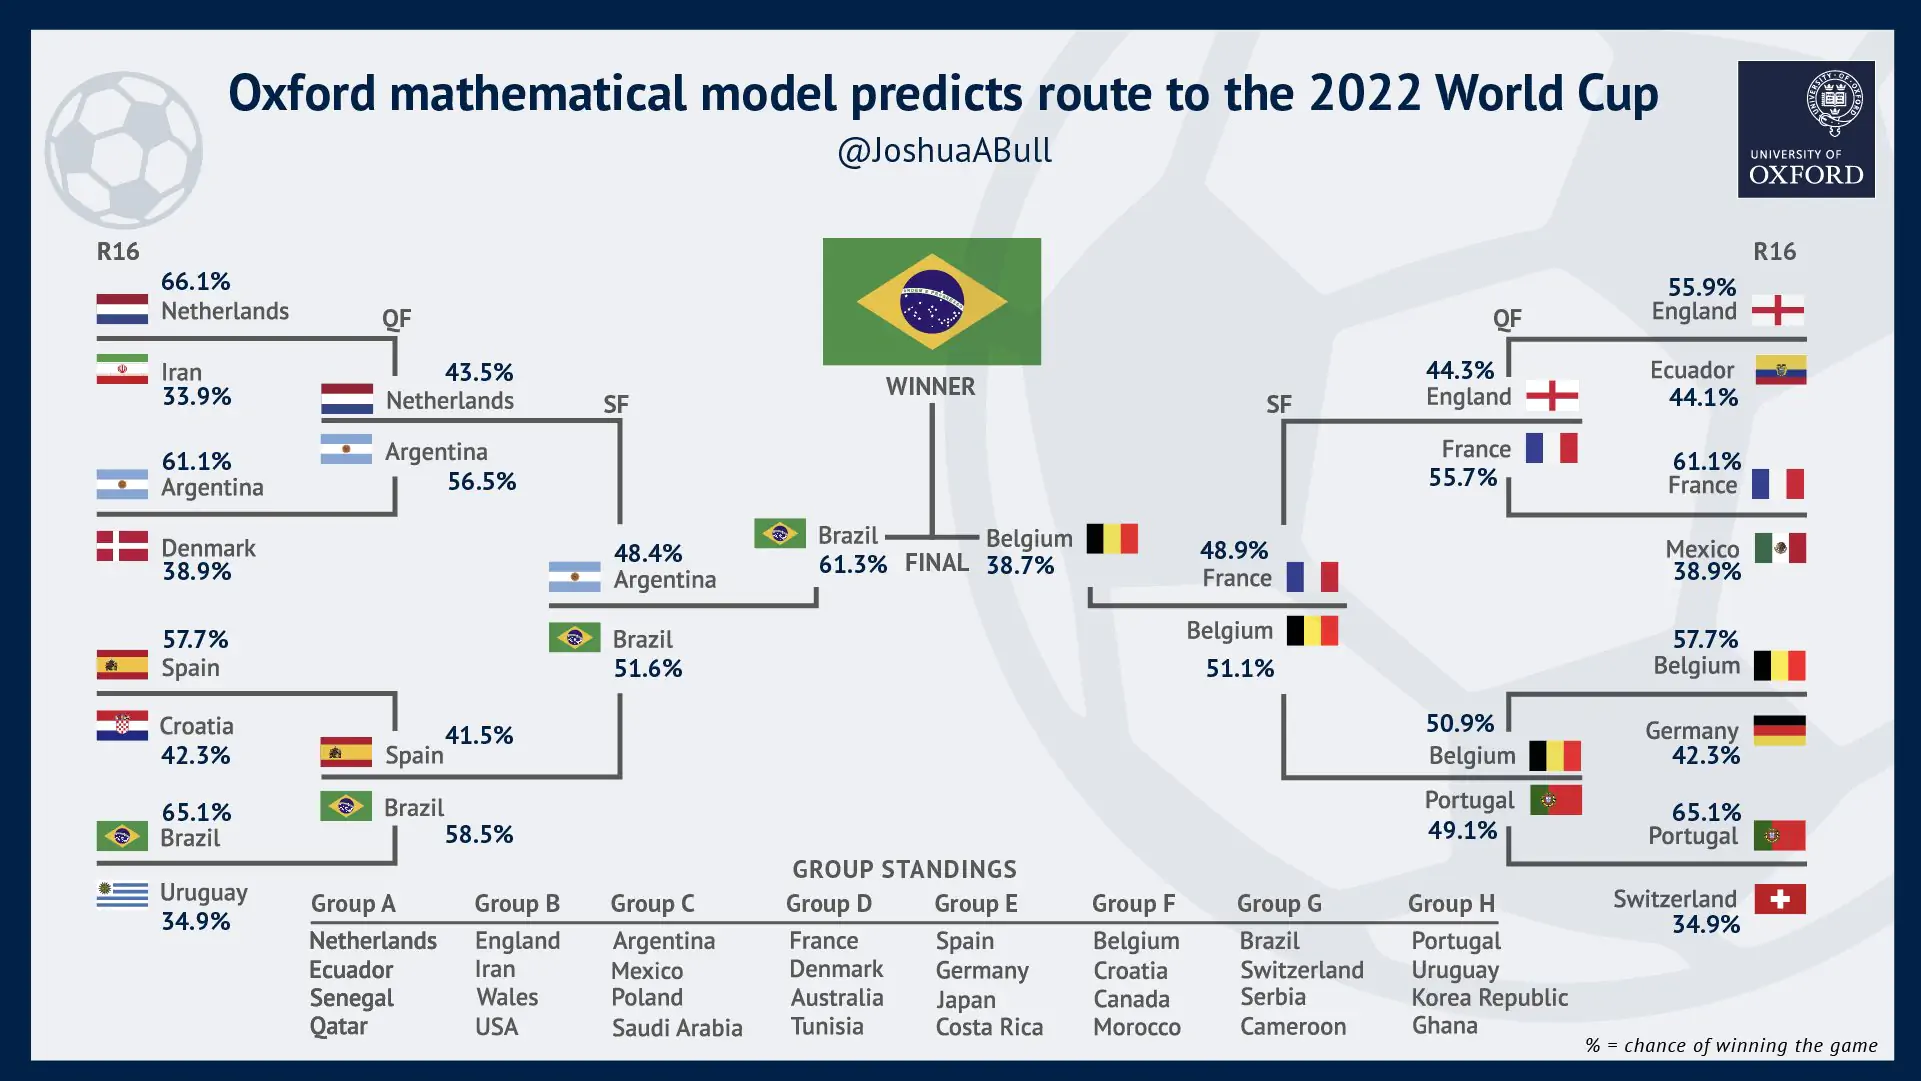 옥스퍼드 대학의 슈퍼컴퓨터와 수학 모델로 월드컵 승패 결과를 예측 결과